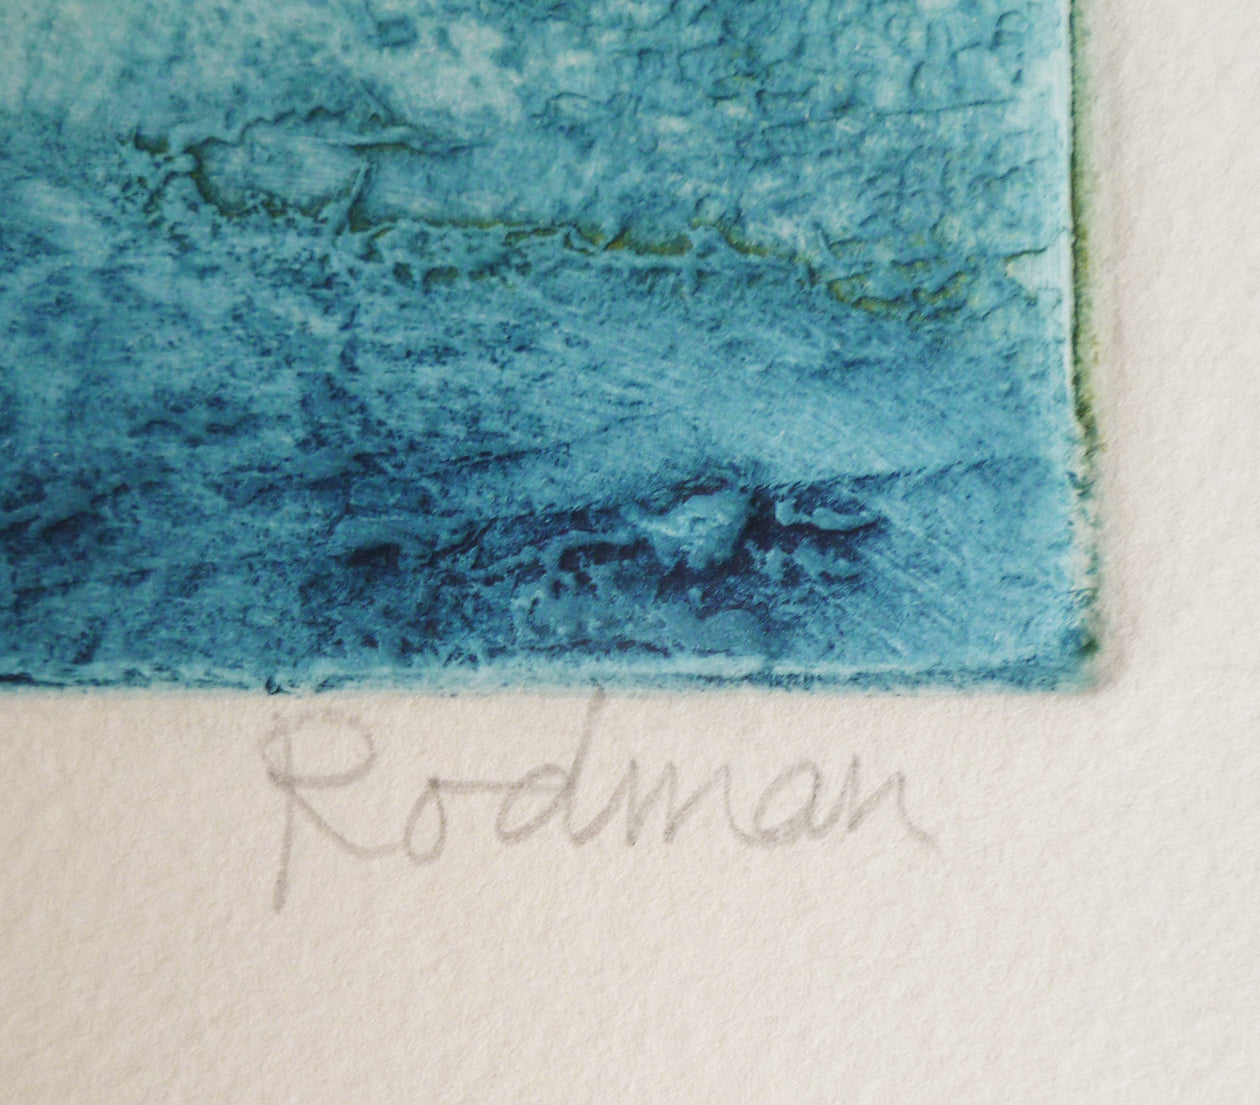 Ruth Rodman Colour Carborundum Etching signature image